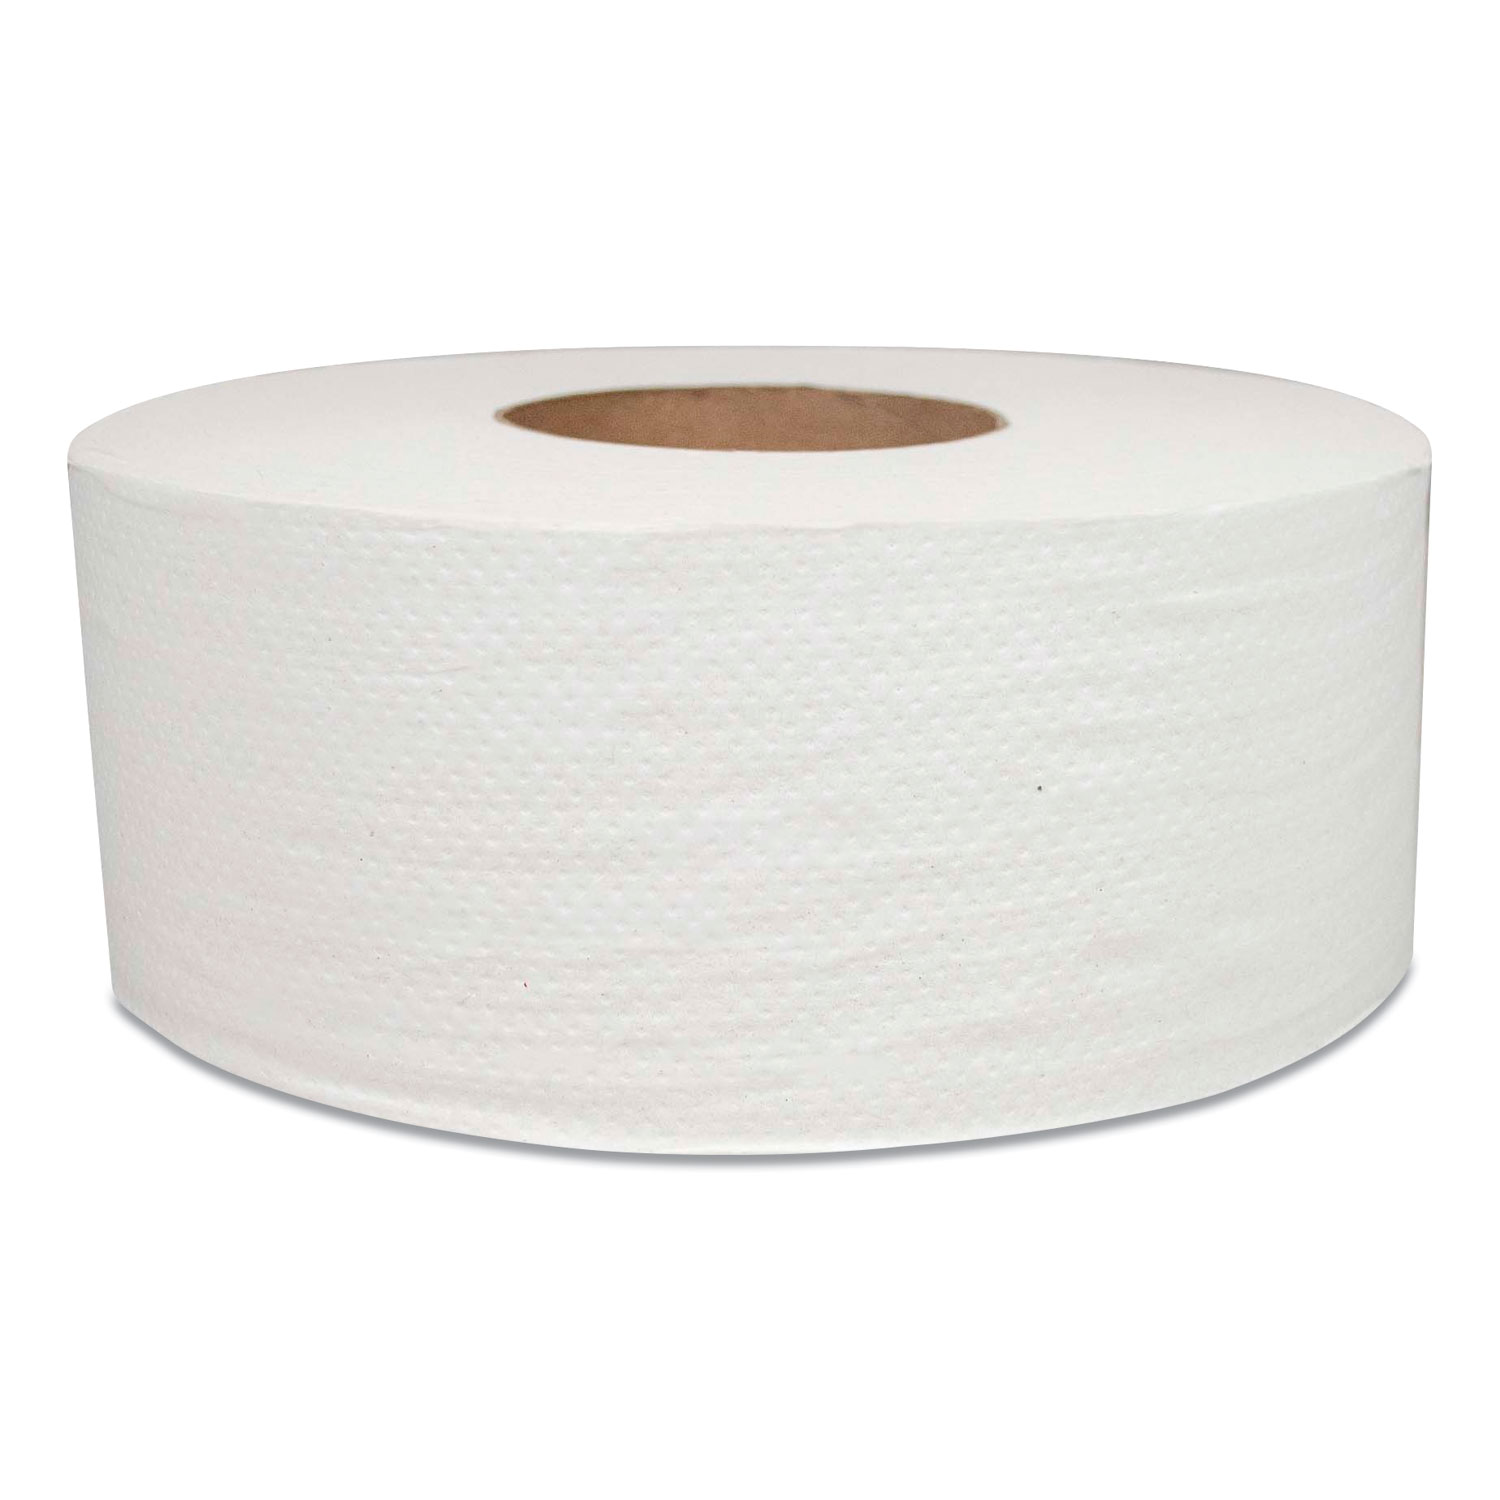  Morcon Tissue MOR 29 Jumbo Bath Tissue, Septic Safe, 2-Ply, White, 700 ft, 12 Rolls/Carton (MOR29) 